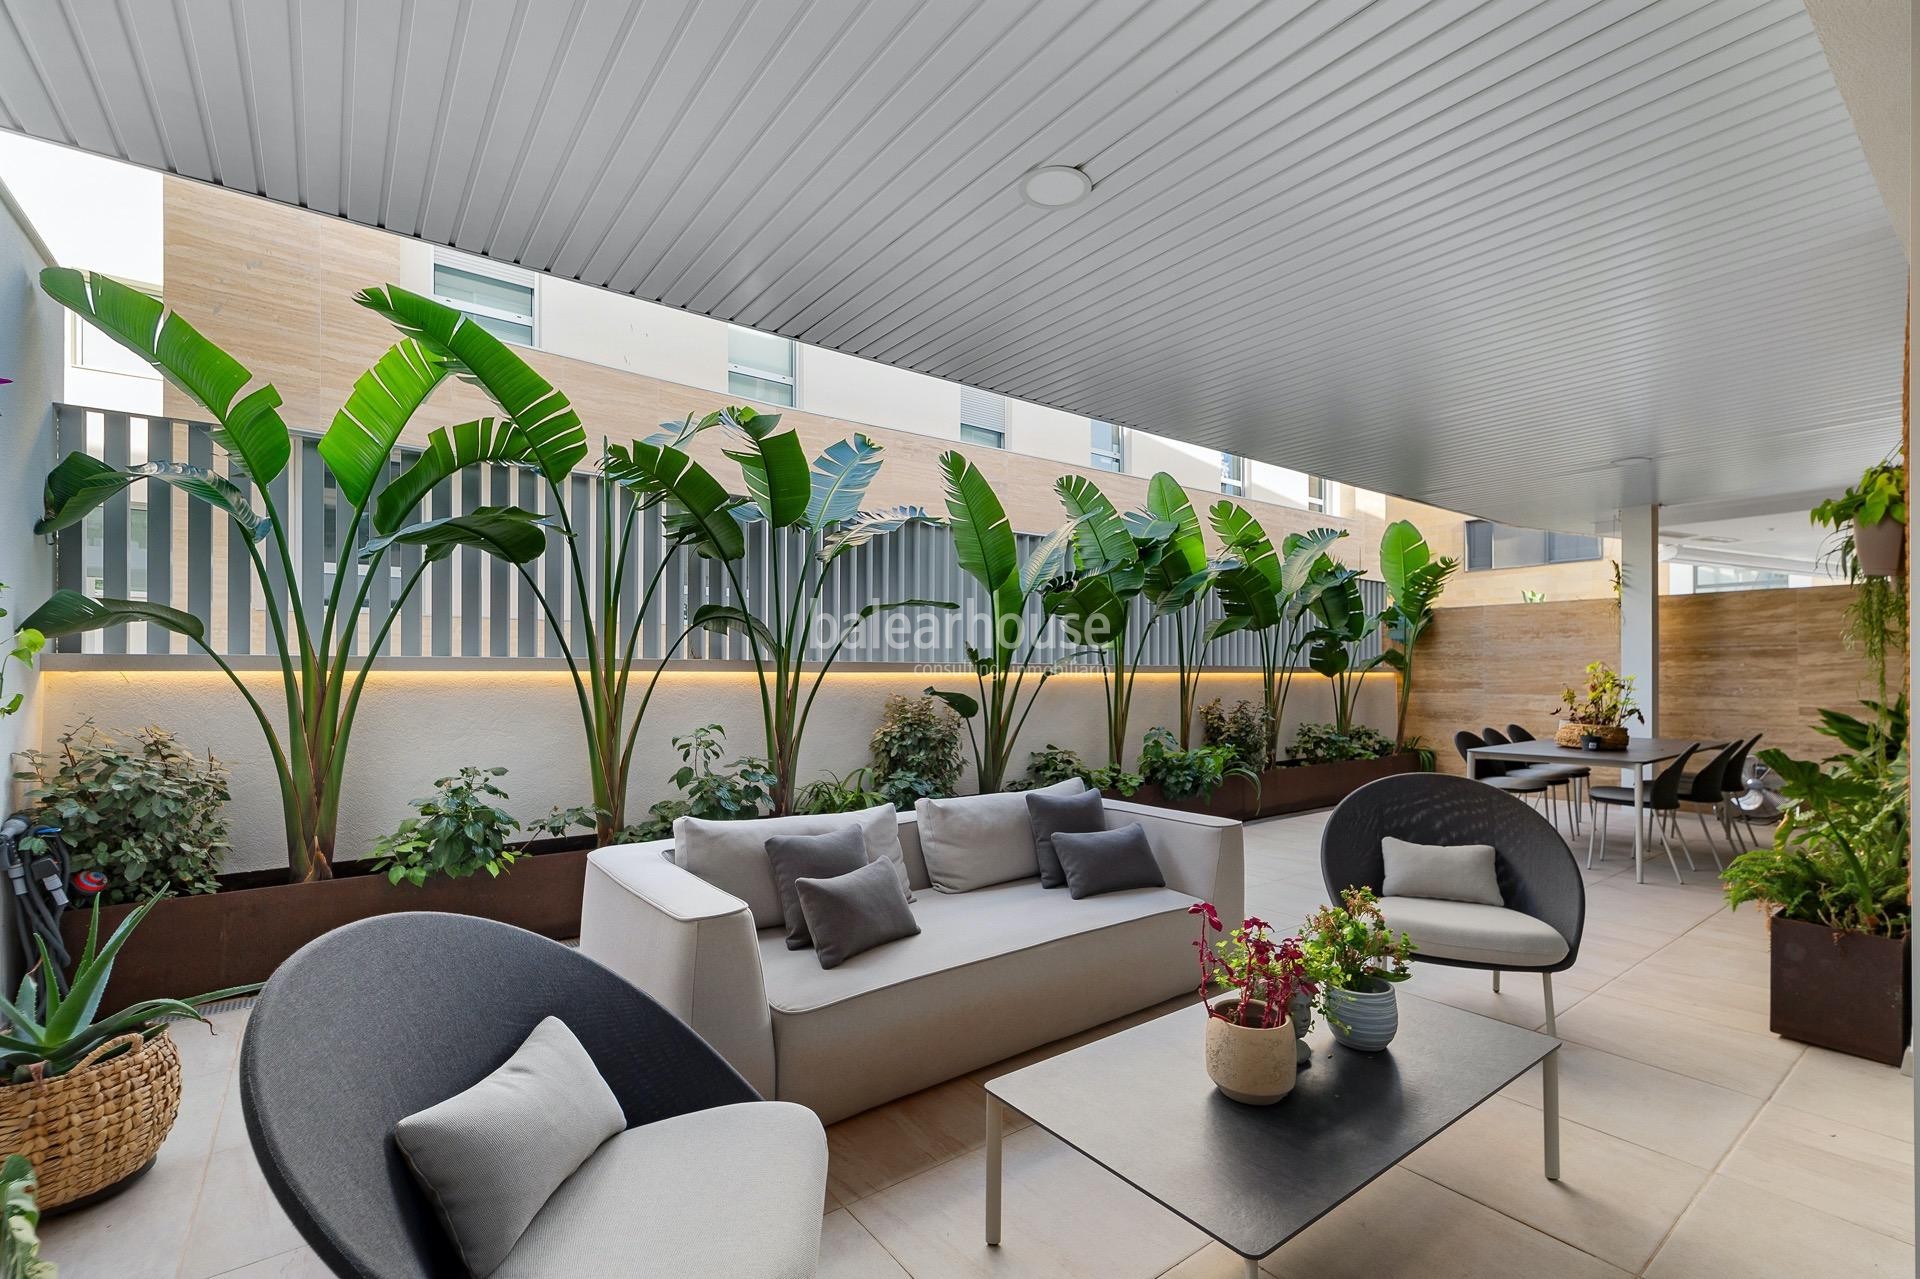 Fantástica planta baja dúplex con terraza y jardín en exclusivo complejo residencial en Son Quint.